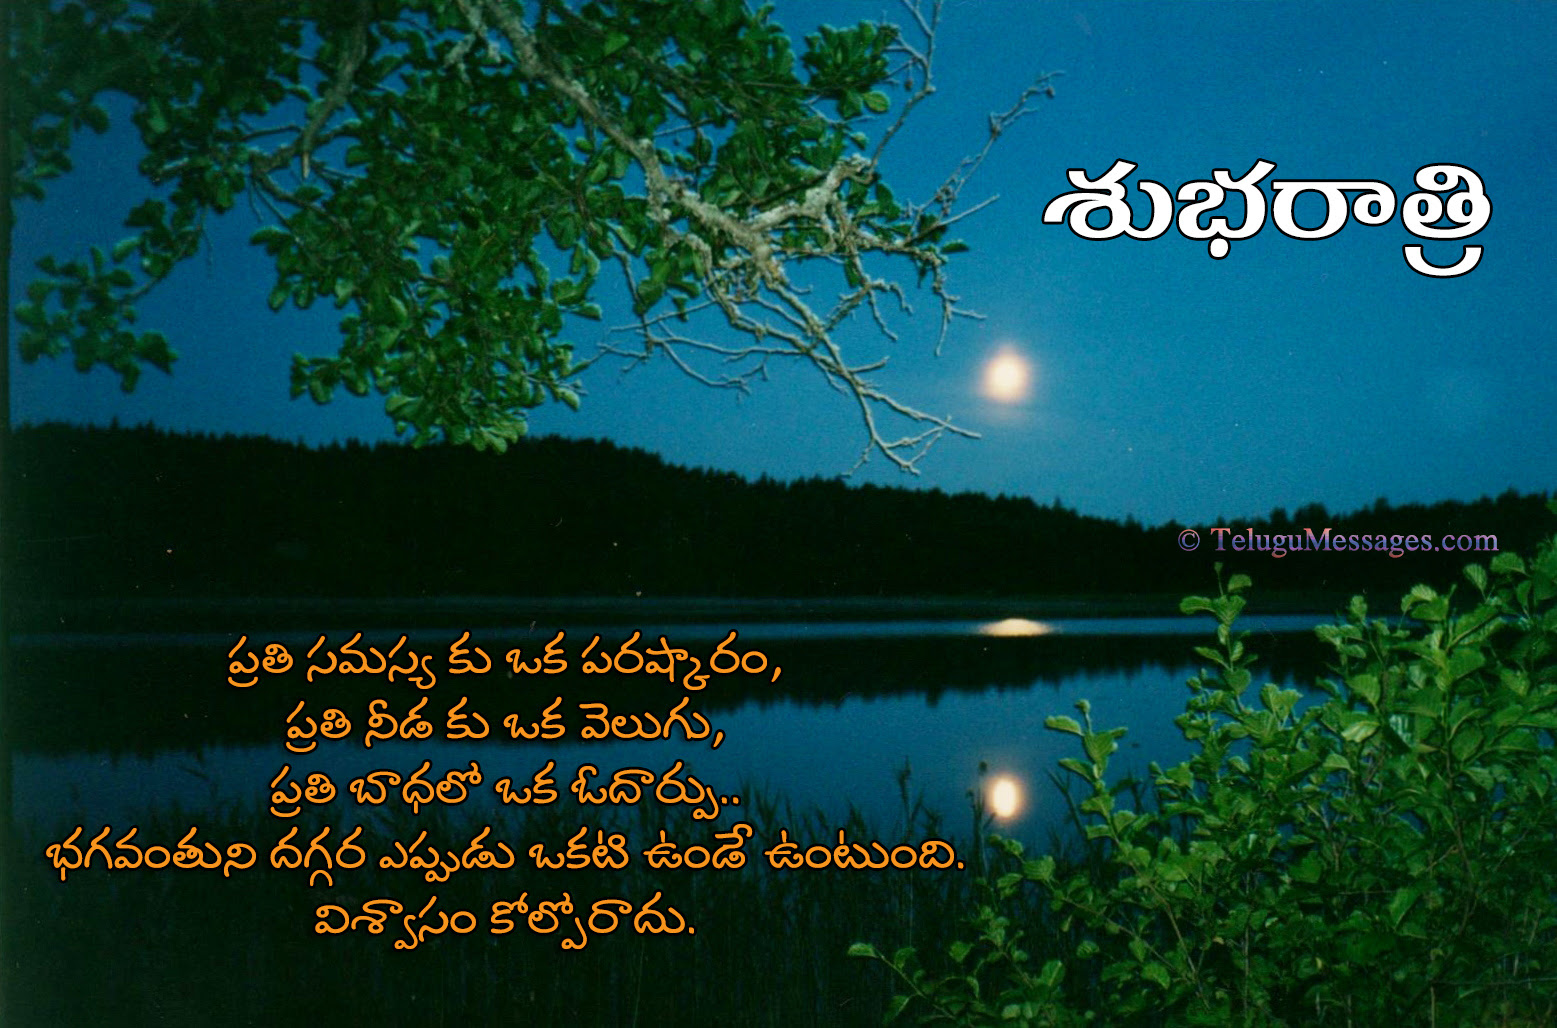 Telugu good night quotes